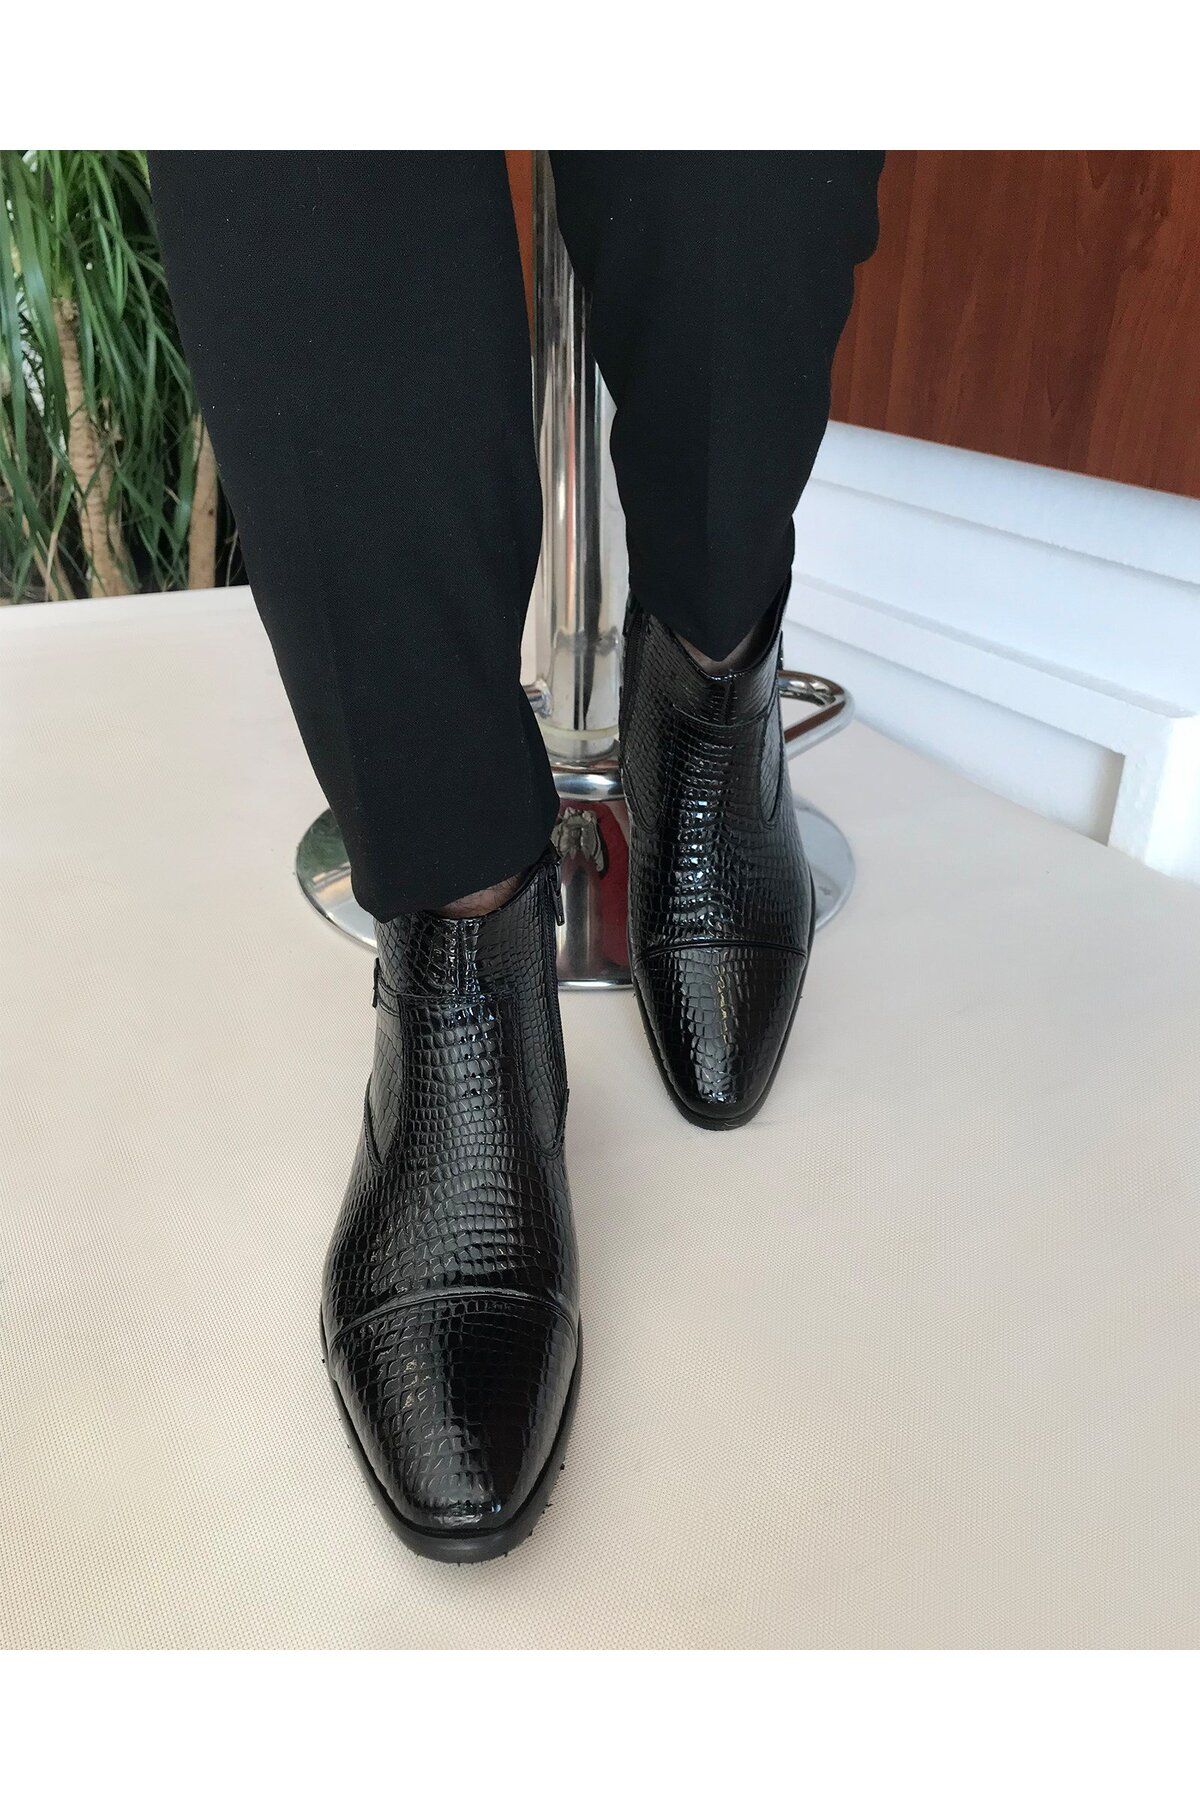 TerziAdemAltun İtalyan Stil Iç Dış Naturel Deri Kışlık Erkek Bot Ayakkabı Siyah T6559